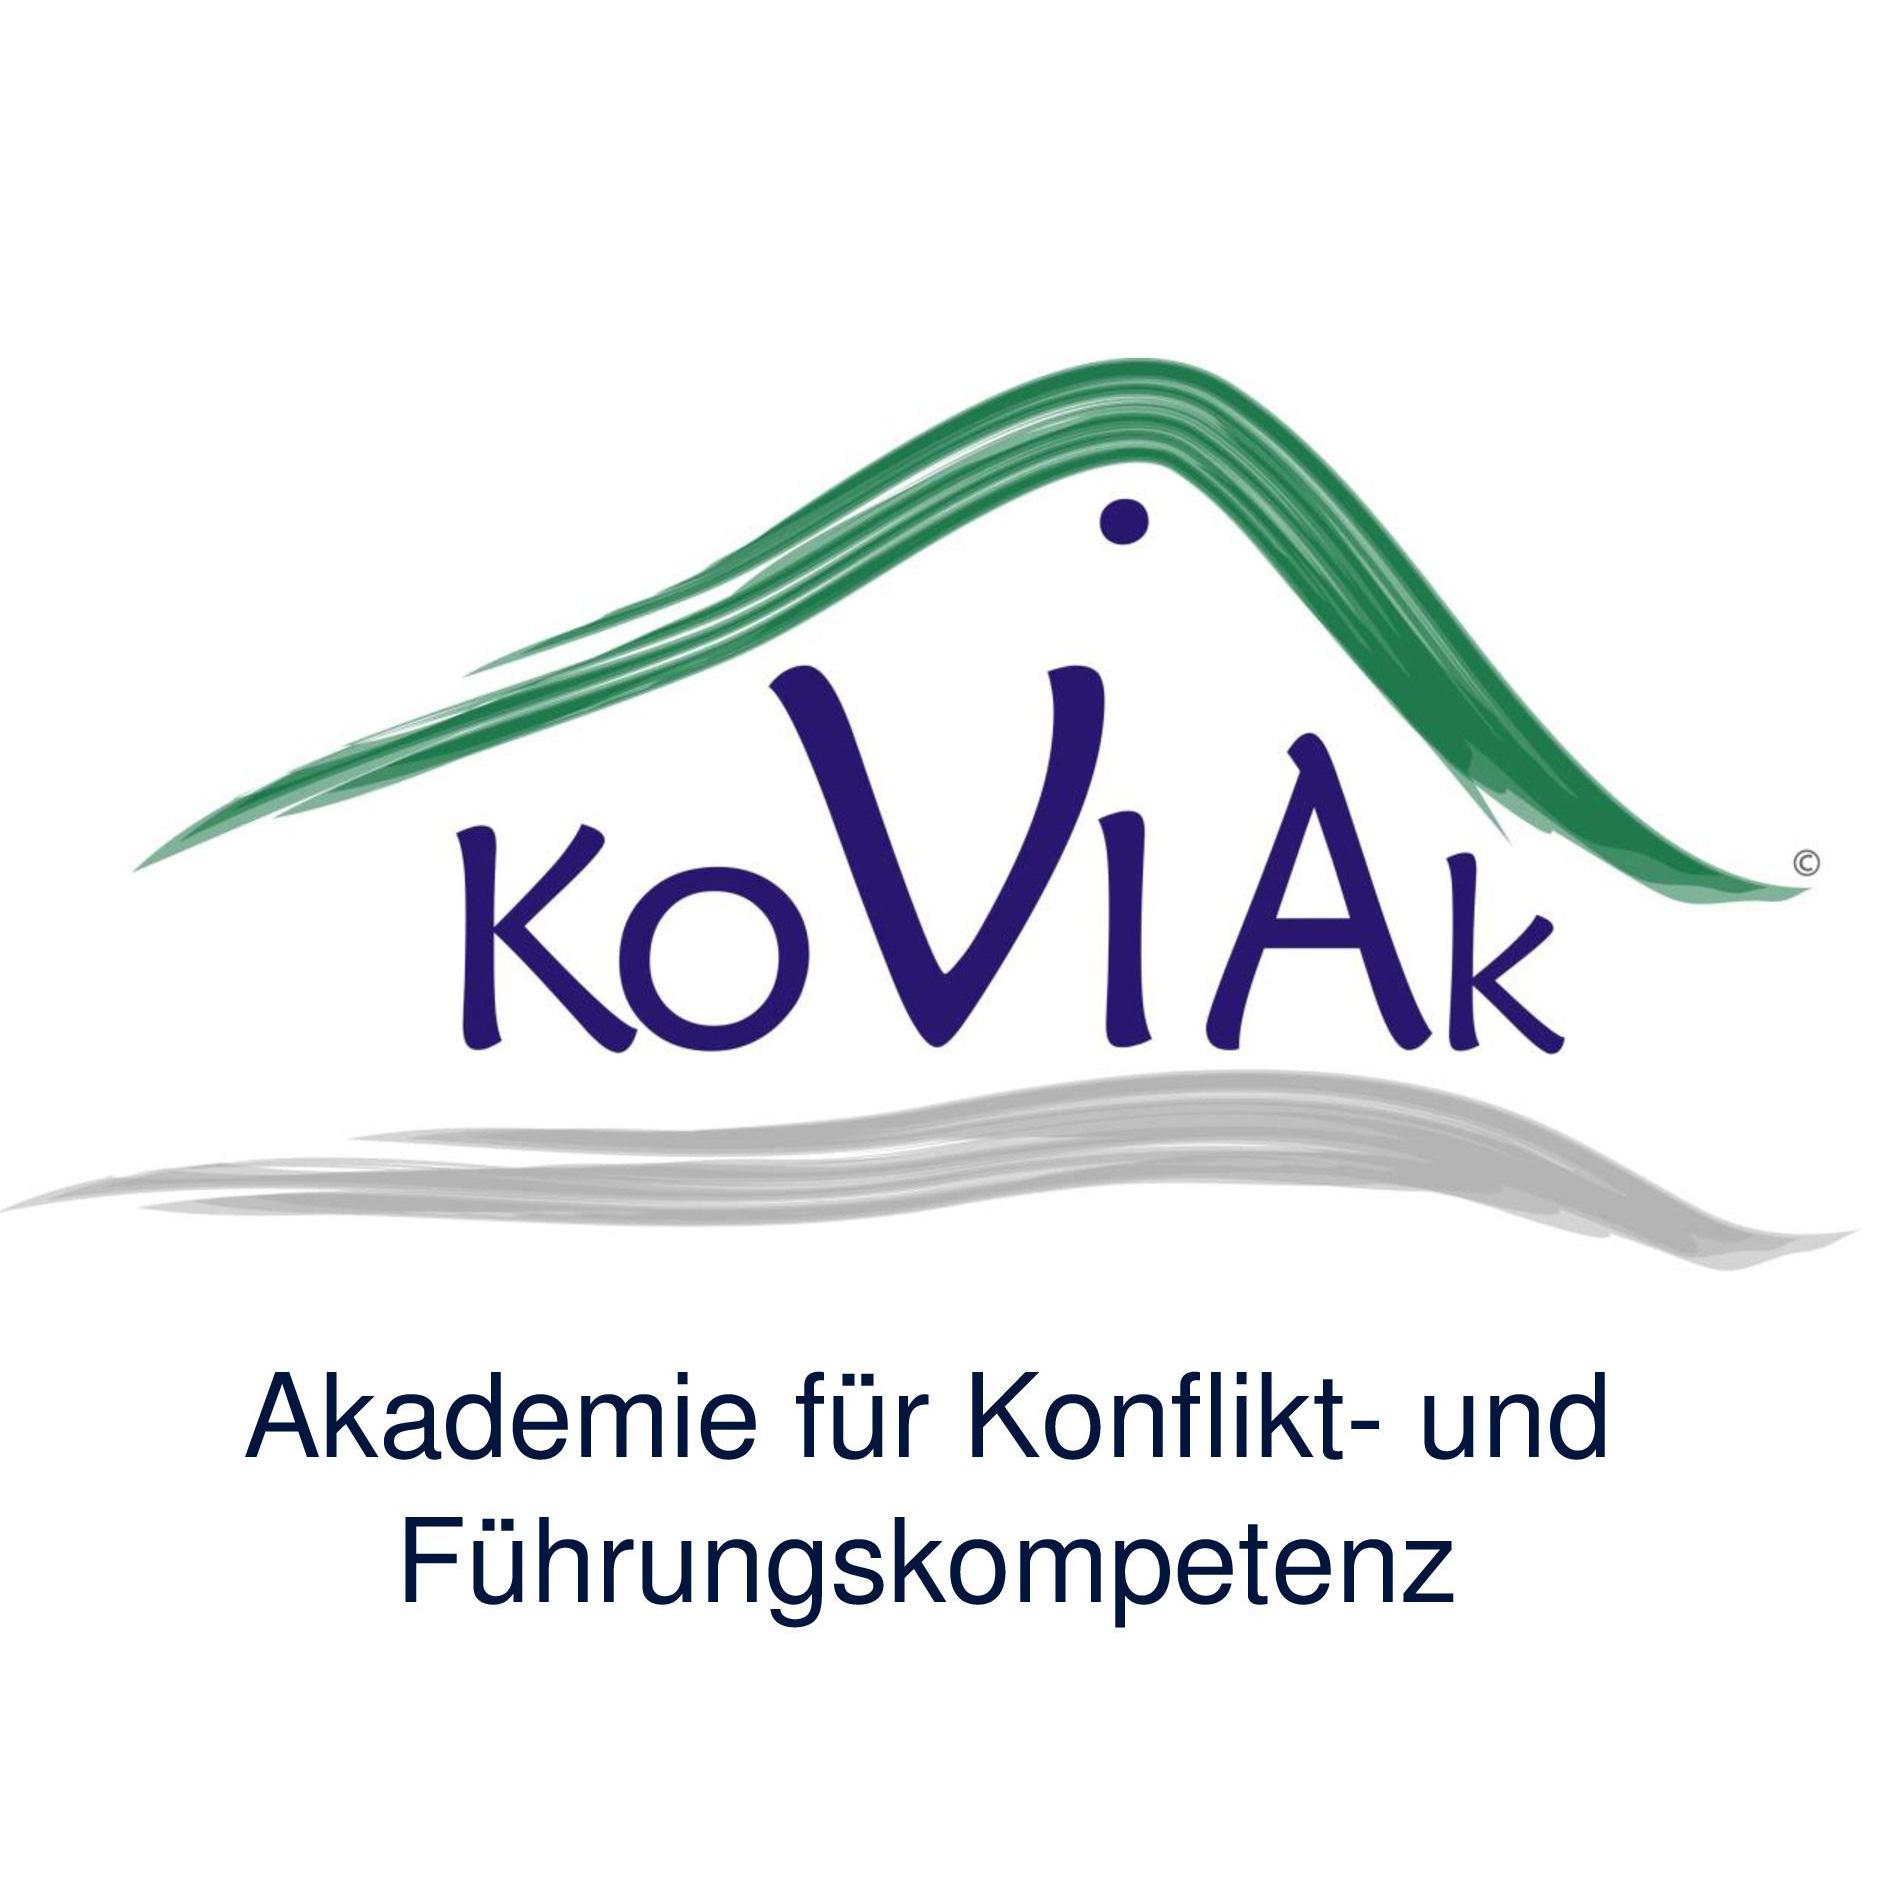 KoViAk Akademie in Mülheim an der Ruhr - Logo